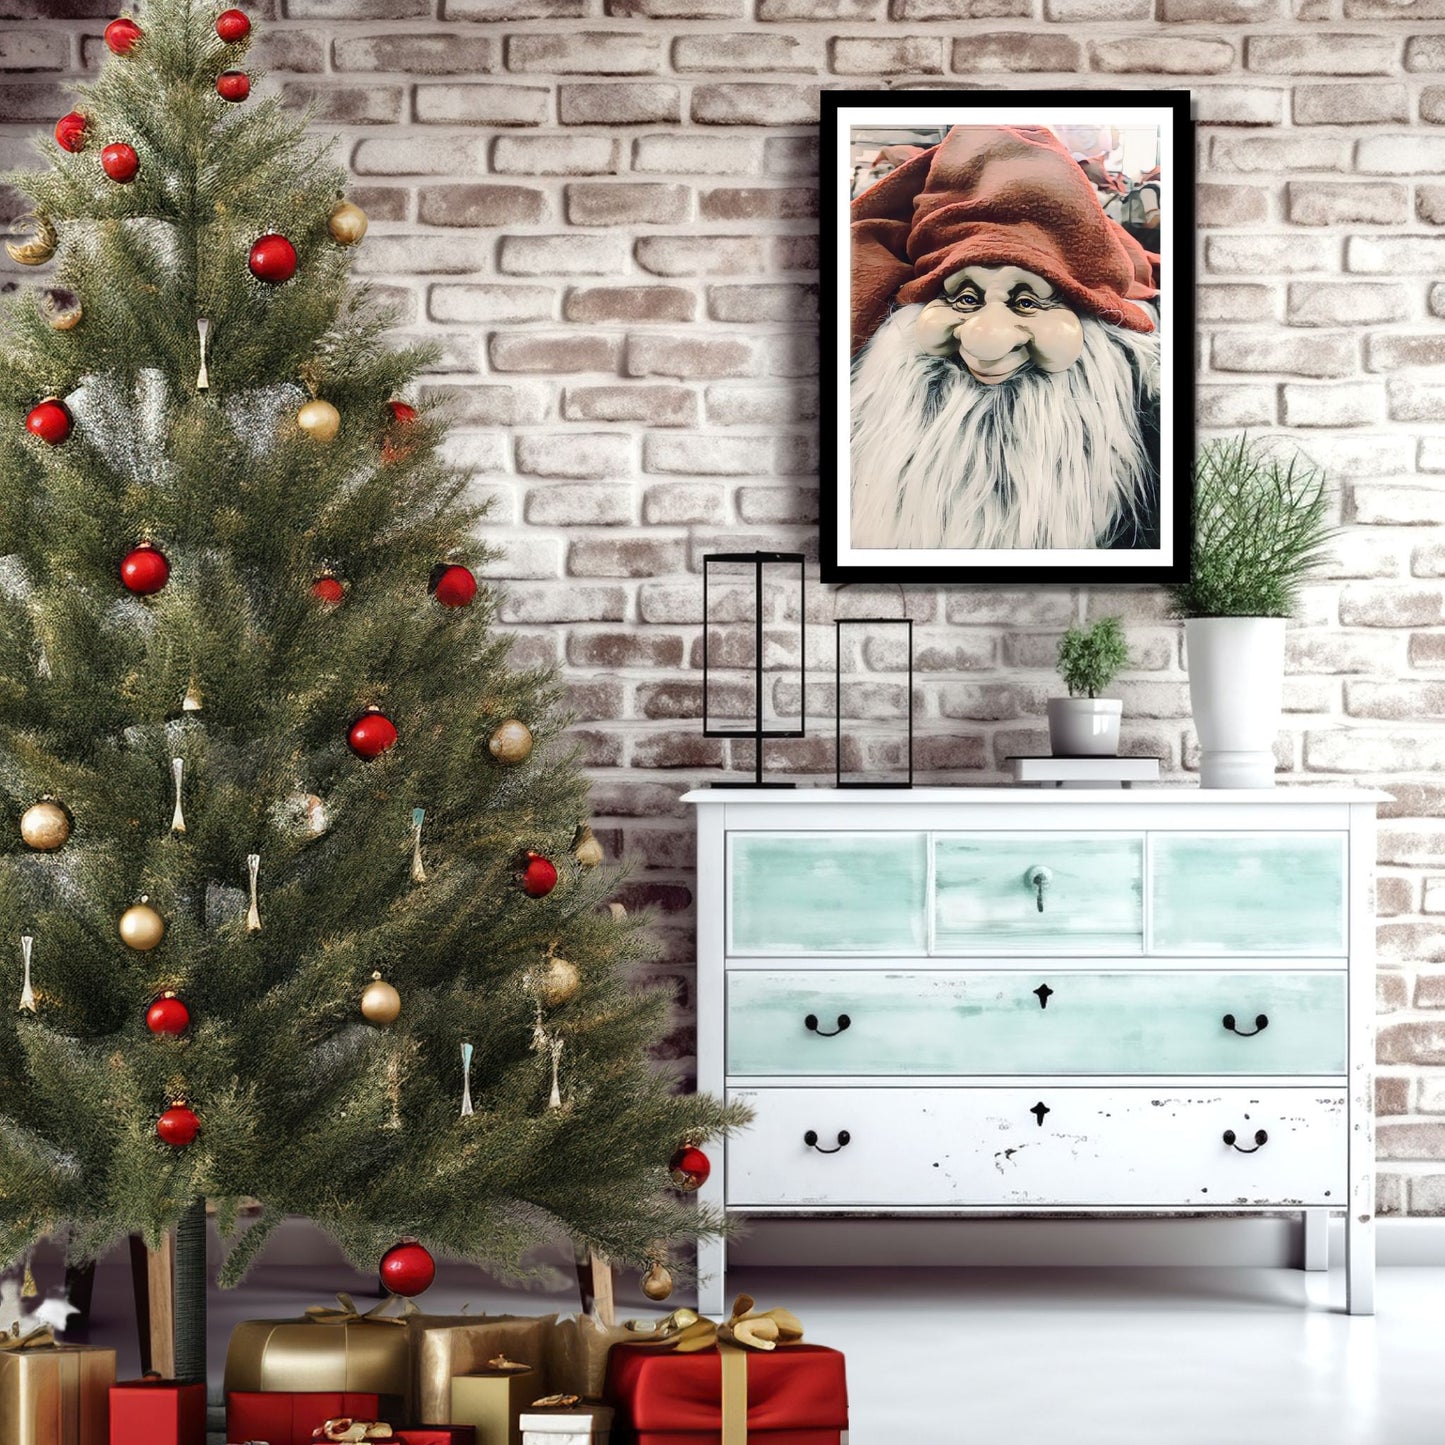 Grafisk motiv av ansiktet til en julenisse med stort, hvitt skjegg og rød nisselue. På bildet henger nissemotivet som plakat i en sort ramme på en murvegg. Under bildet står det en grønn kommode, og ved siden av et juletre og julepakker.